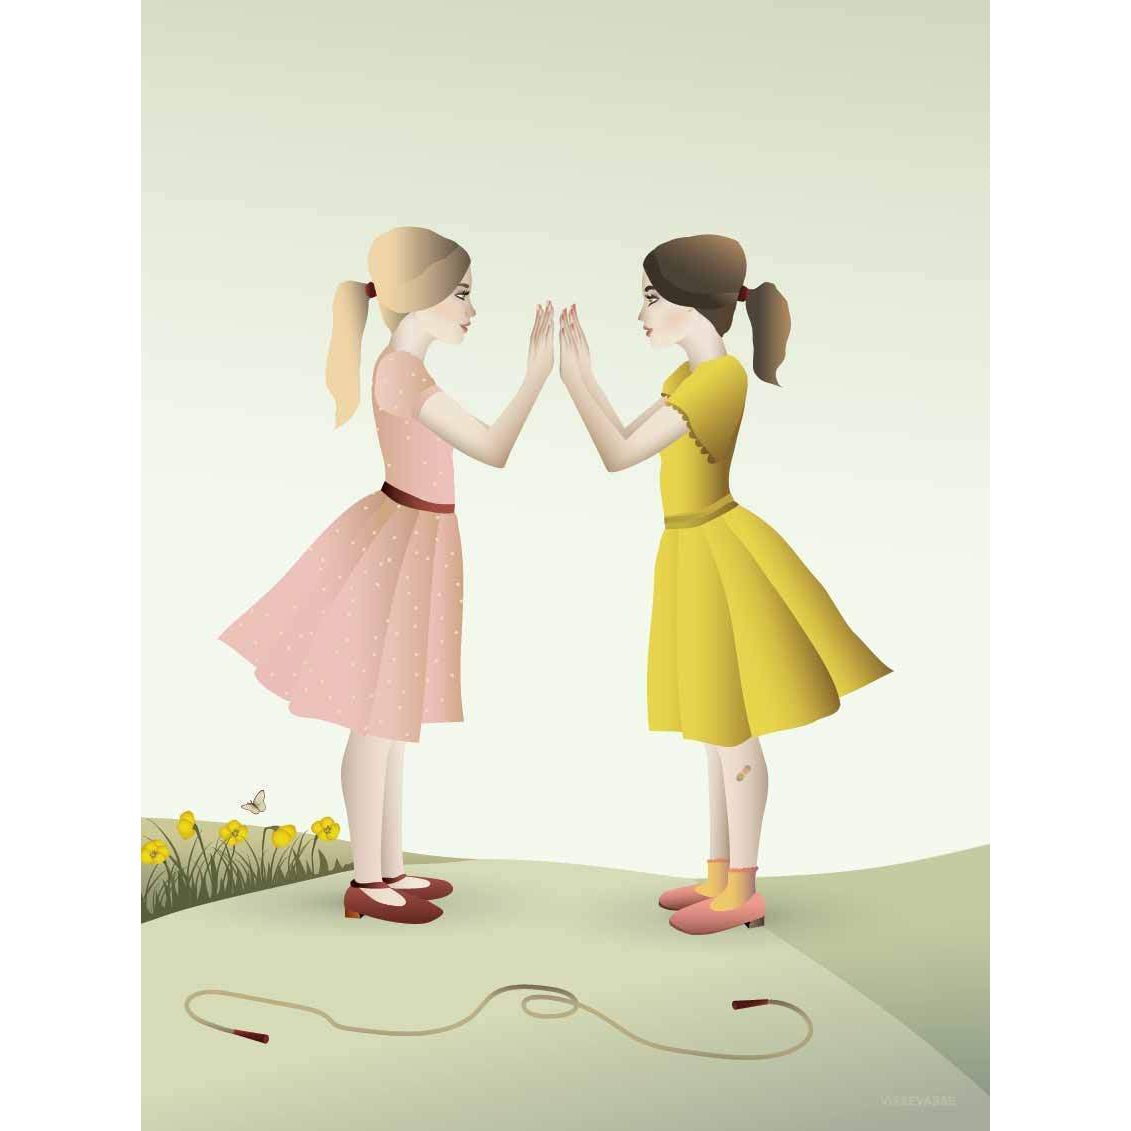 Vissevasse Hand klatschende Mädchenplakat, 15 x21 cm